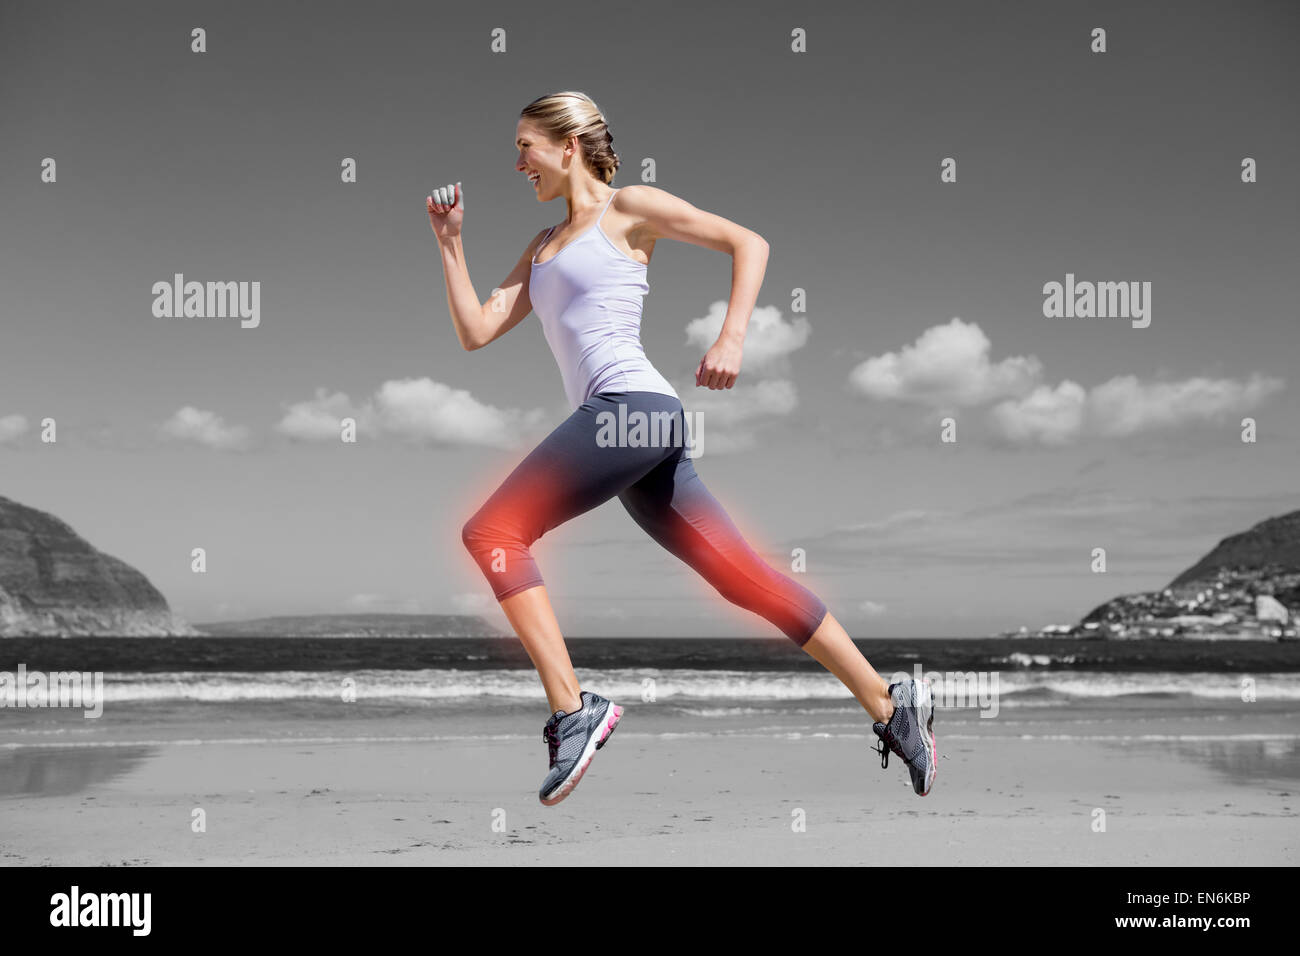 Mise en évidence de la jambe le jogging woman on beach Banque D'Images